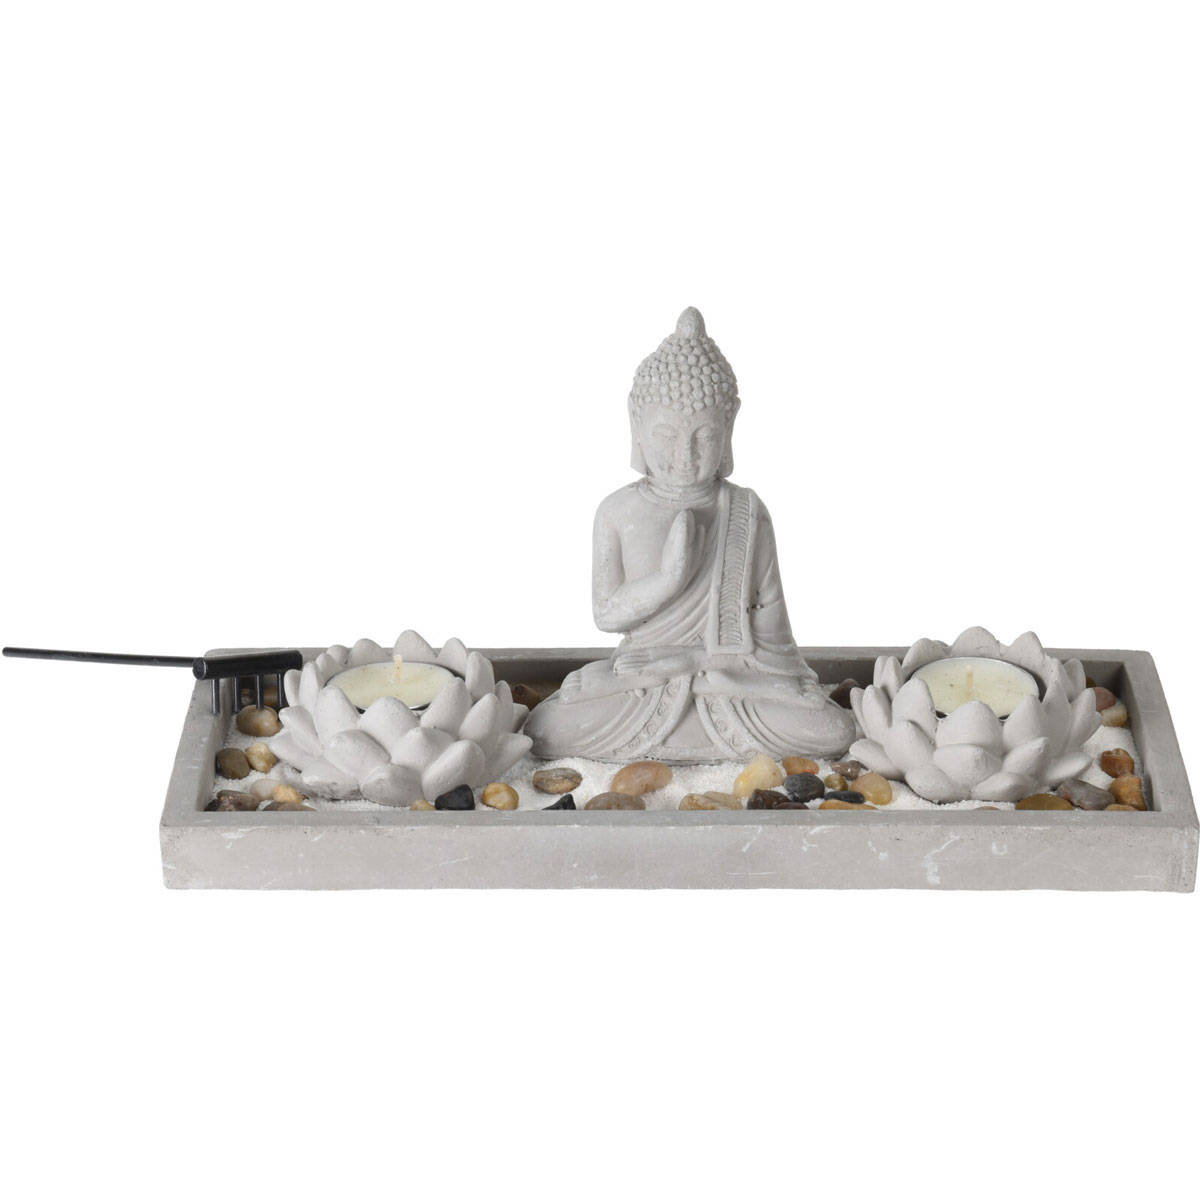 ZEN-Garten mit Buddha-Figur kaufen | home24